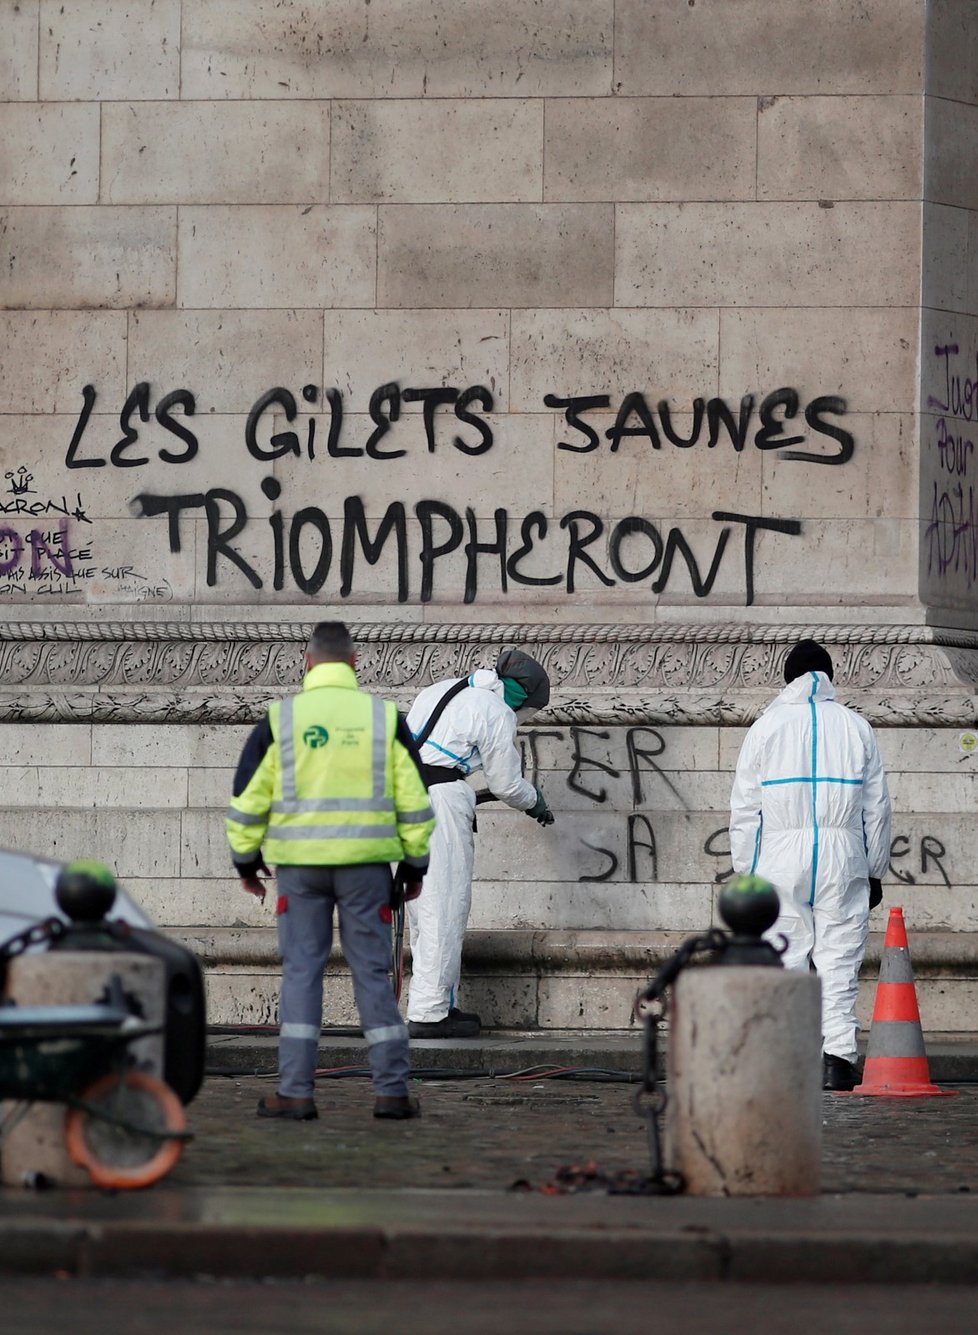 Francouzi od 17. listopadu protestovali v sobotu už potřetí v rámci hnutí takzvaných žlutých vest nejen kvůli plánovanému zvýšení cen pohonných hmot, ale proti růstu životních nákladů obecně. K sobotním akcím se připojilo v celé zemi na 75.000 lidí